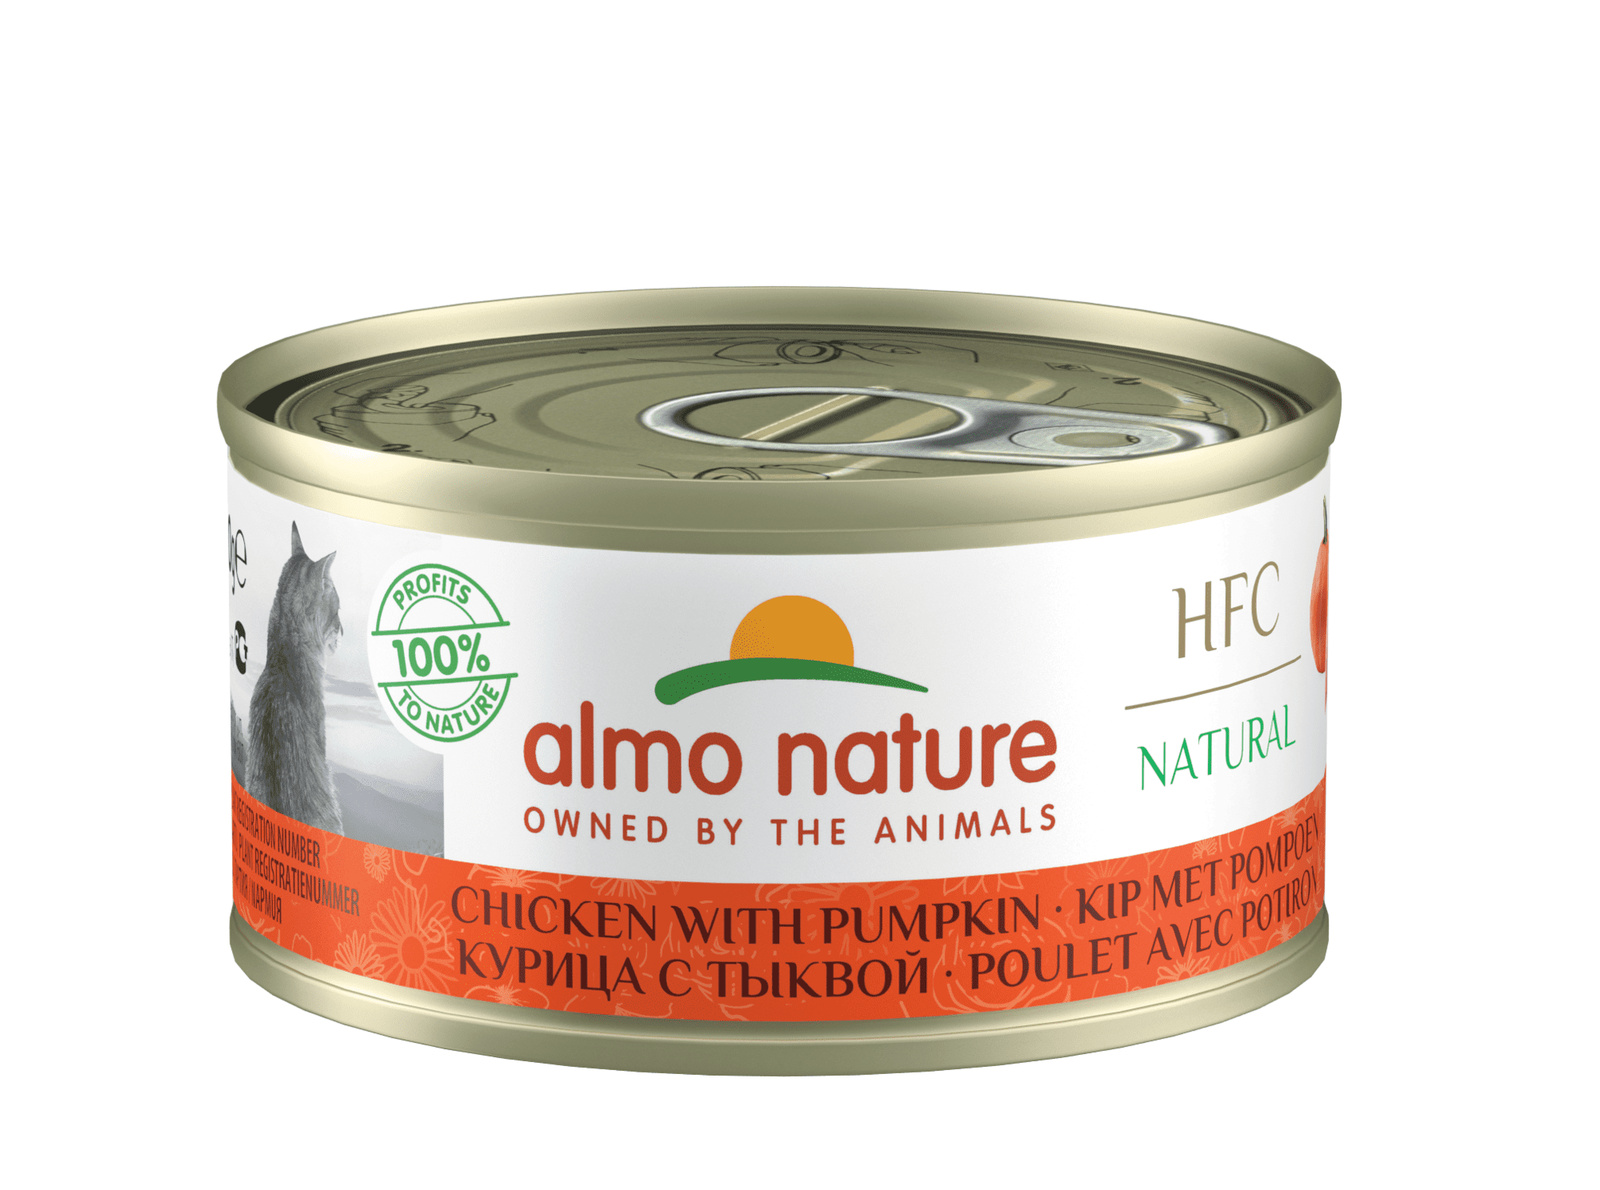 Almo Nature консервы Almo Nature консервы для кошек с курицей и тыквой, 75% мяса (70 г) консервы для кошек almo nature legend с курицей и сыром 75% 70 г